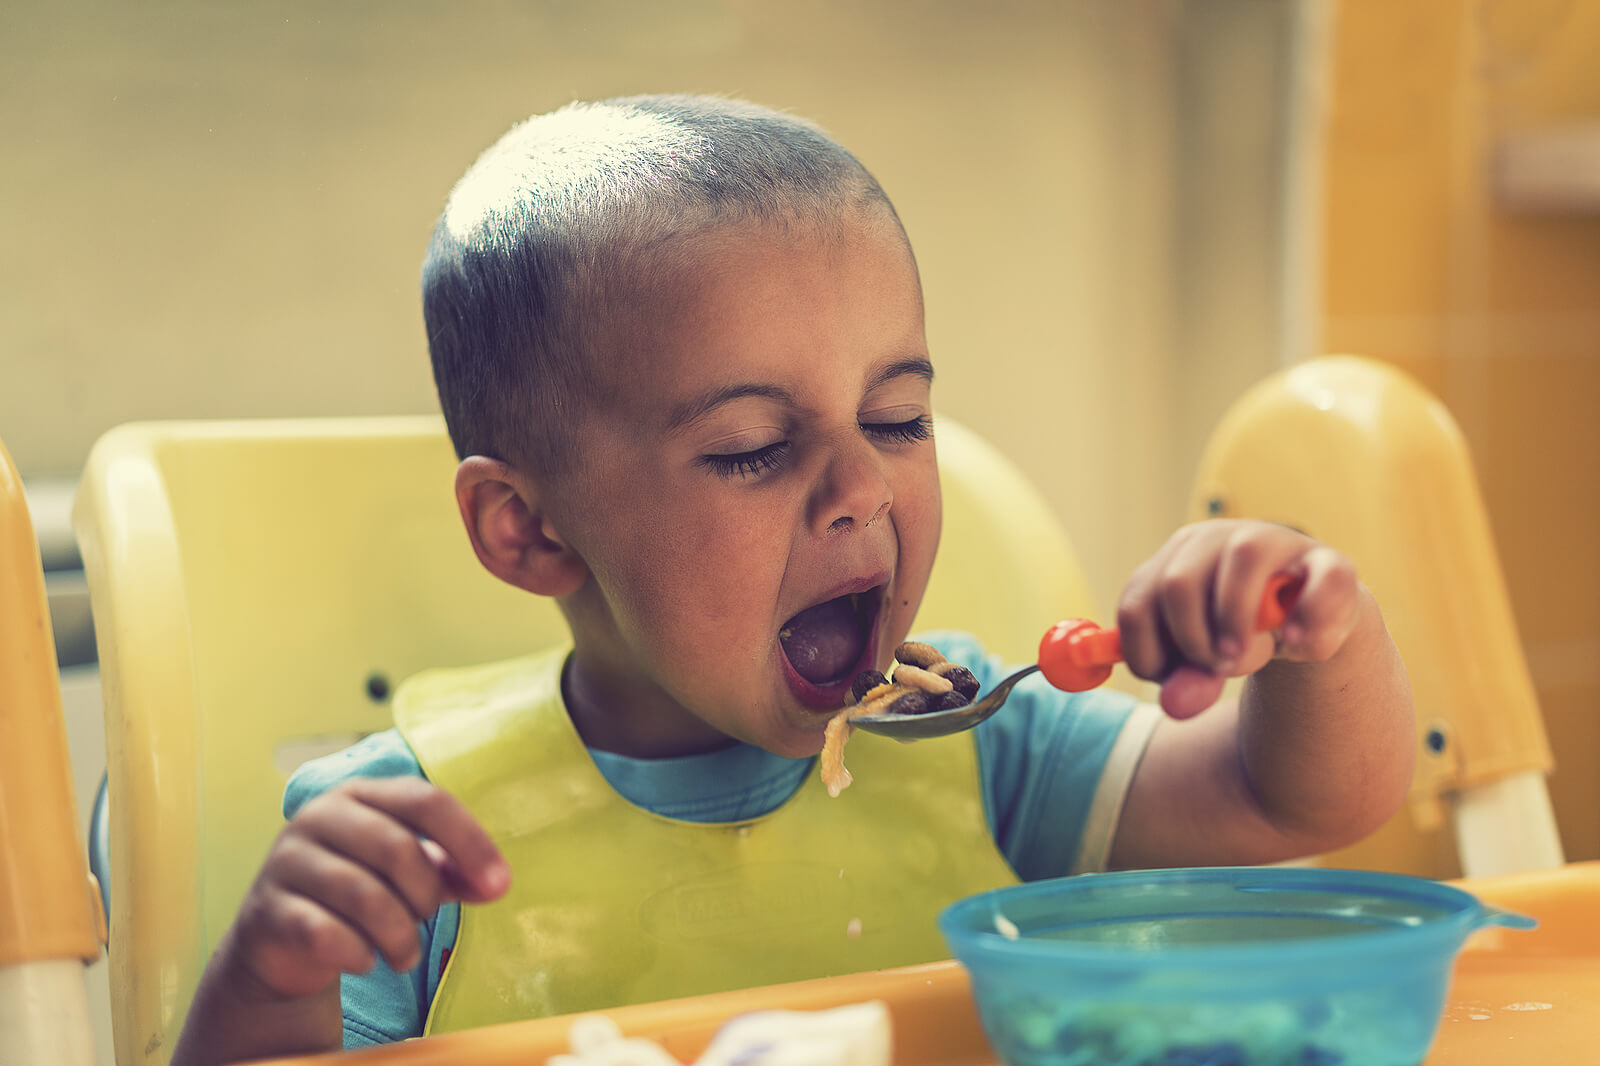 Niño de entre 2 y 3 años comiendo con cuchara él solo.